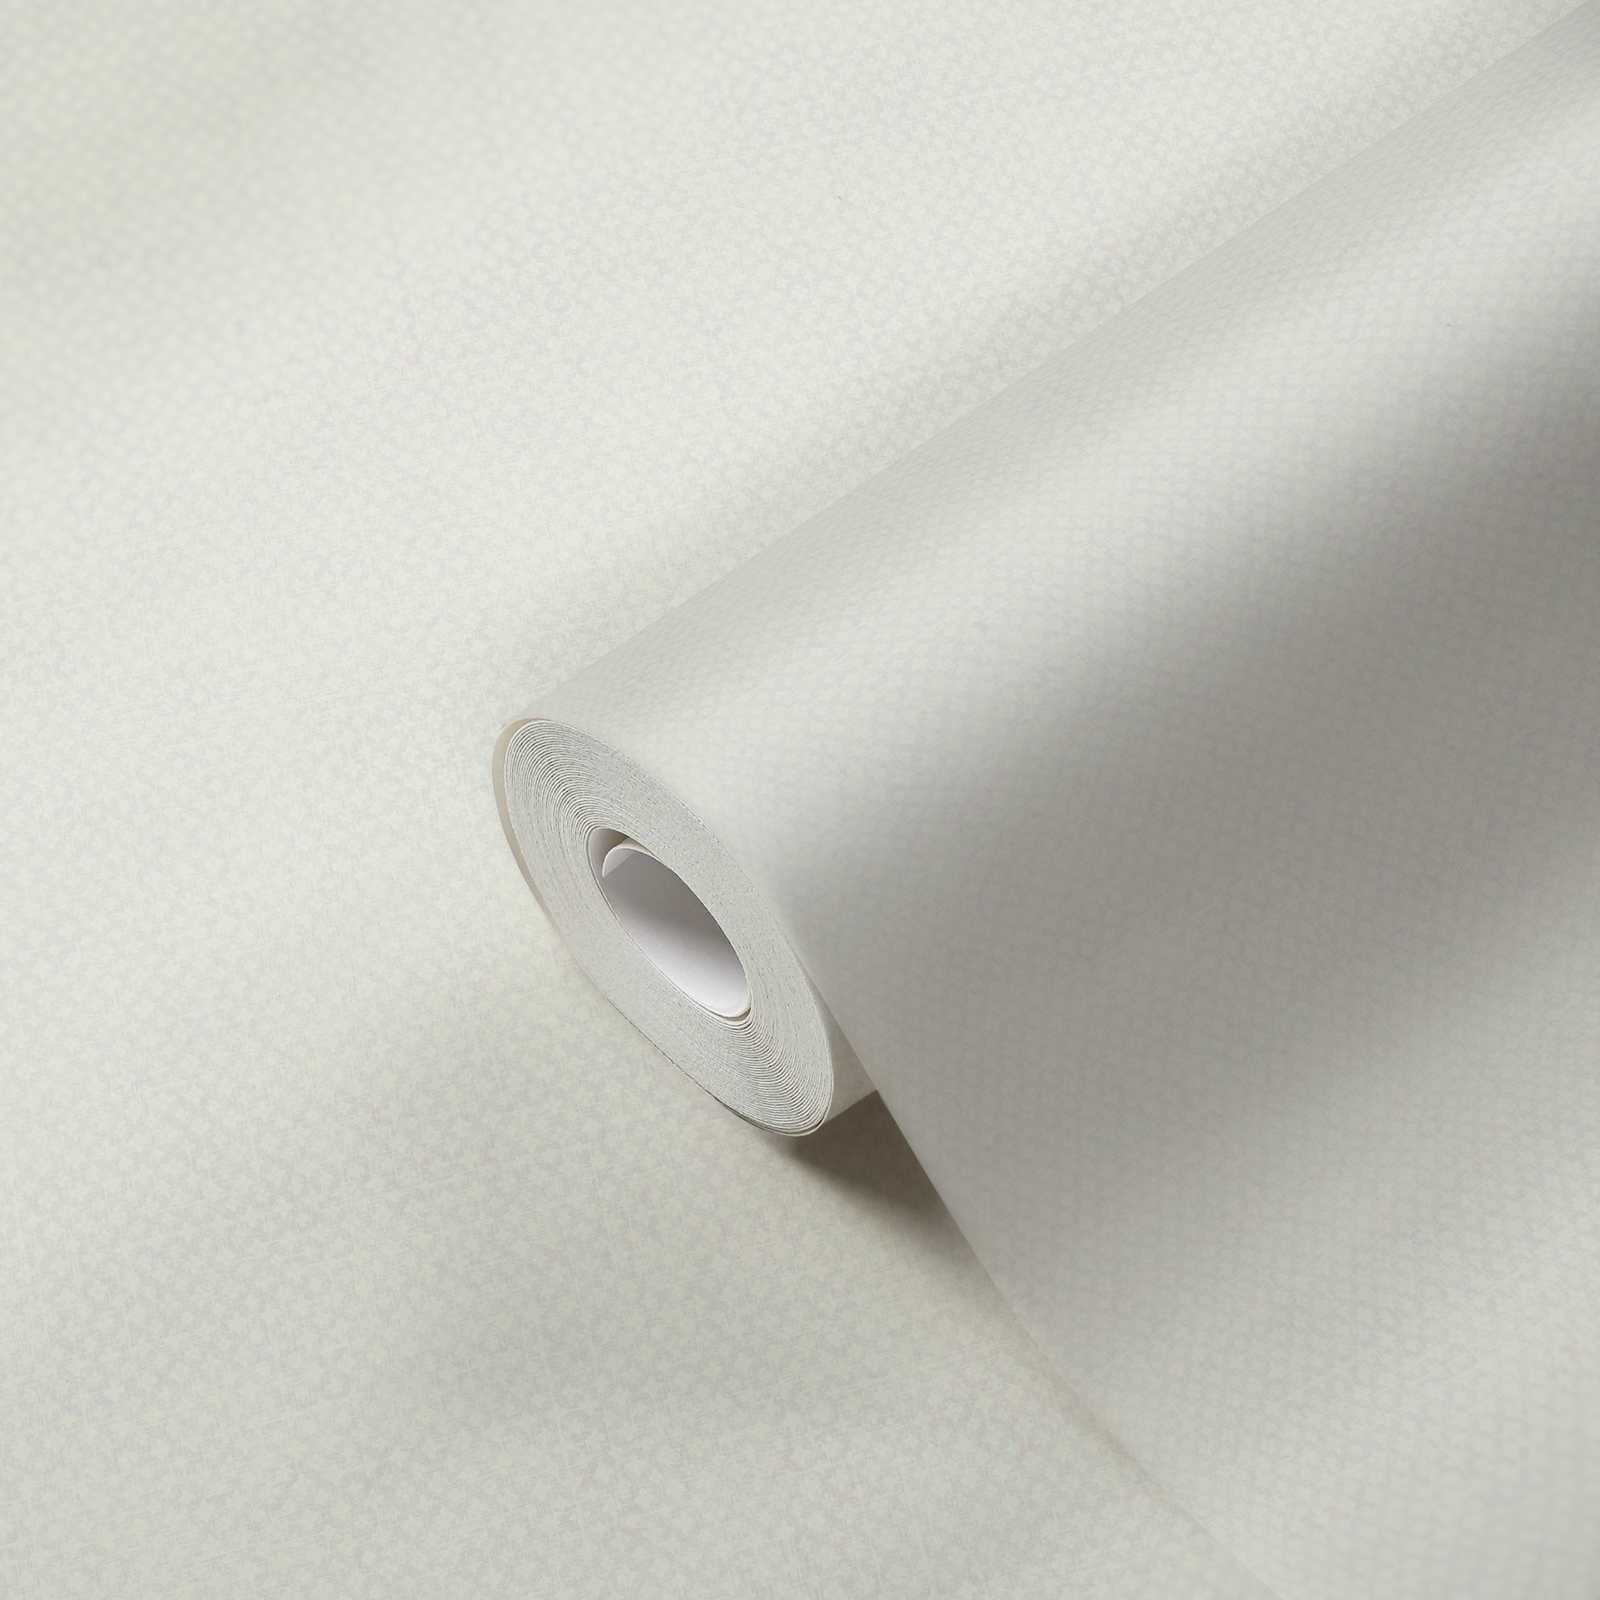             Carta da parati in tessuto non tessuto con motivo a trama fine - grigio chiaro, bianco
        